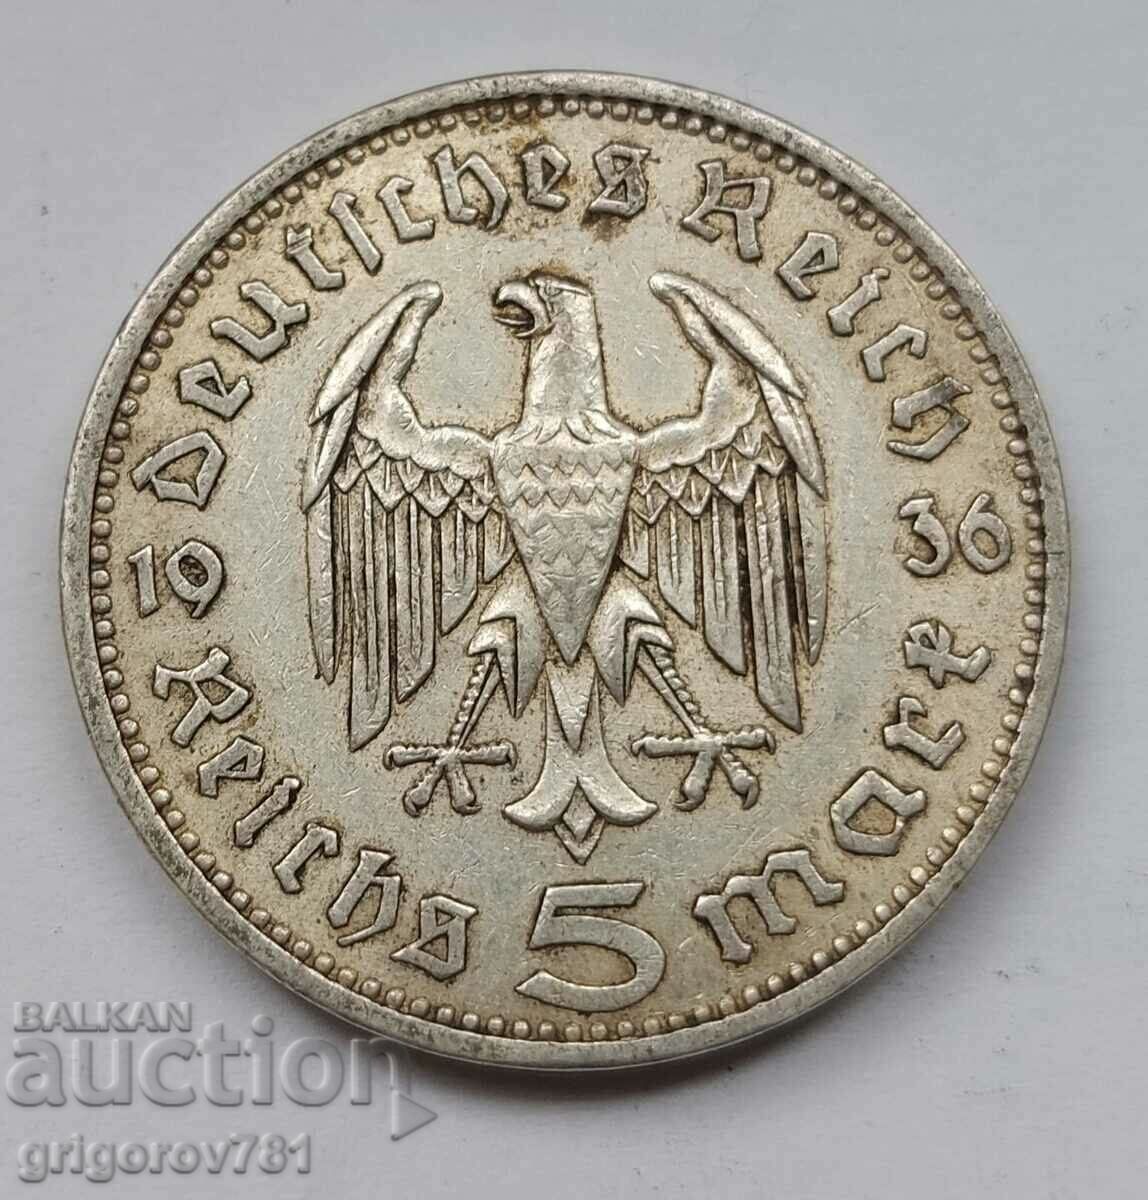 5 Mark Silver Γερμανία 1936 A III Reich Silver Coin #15